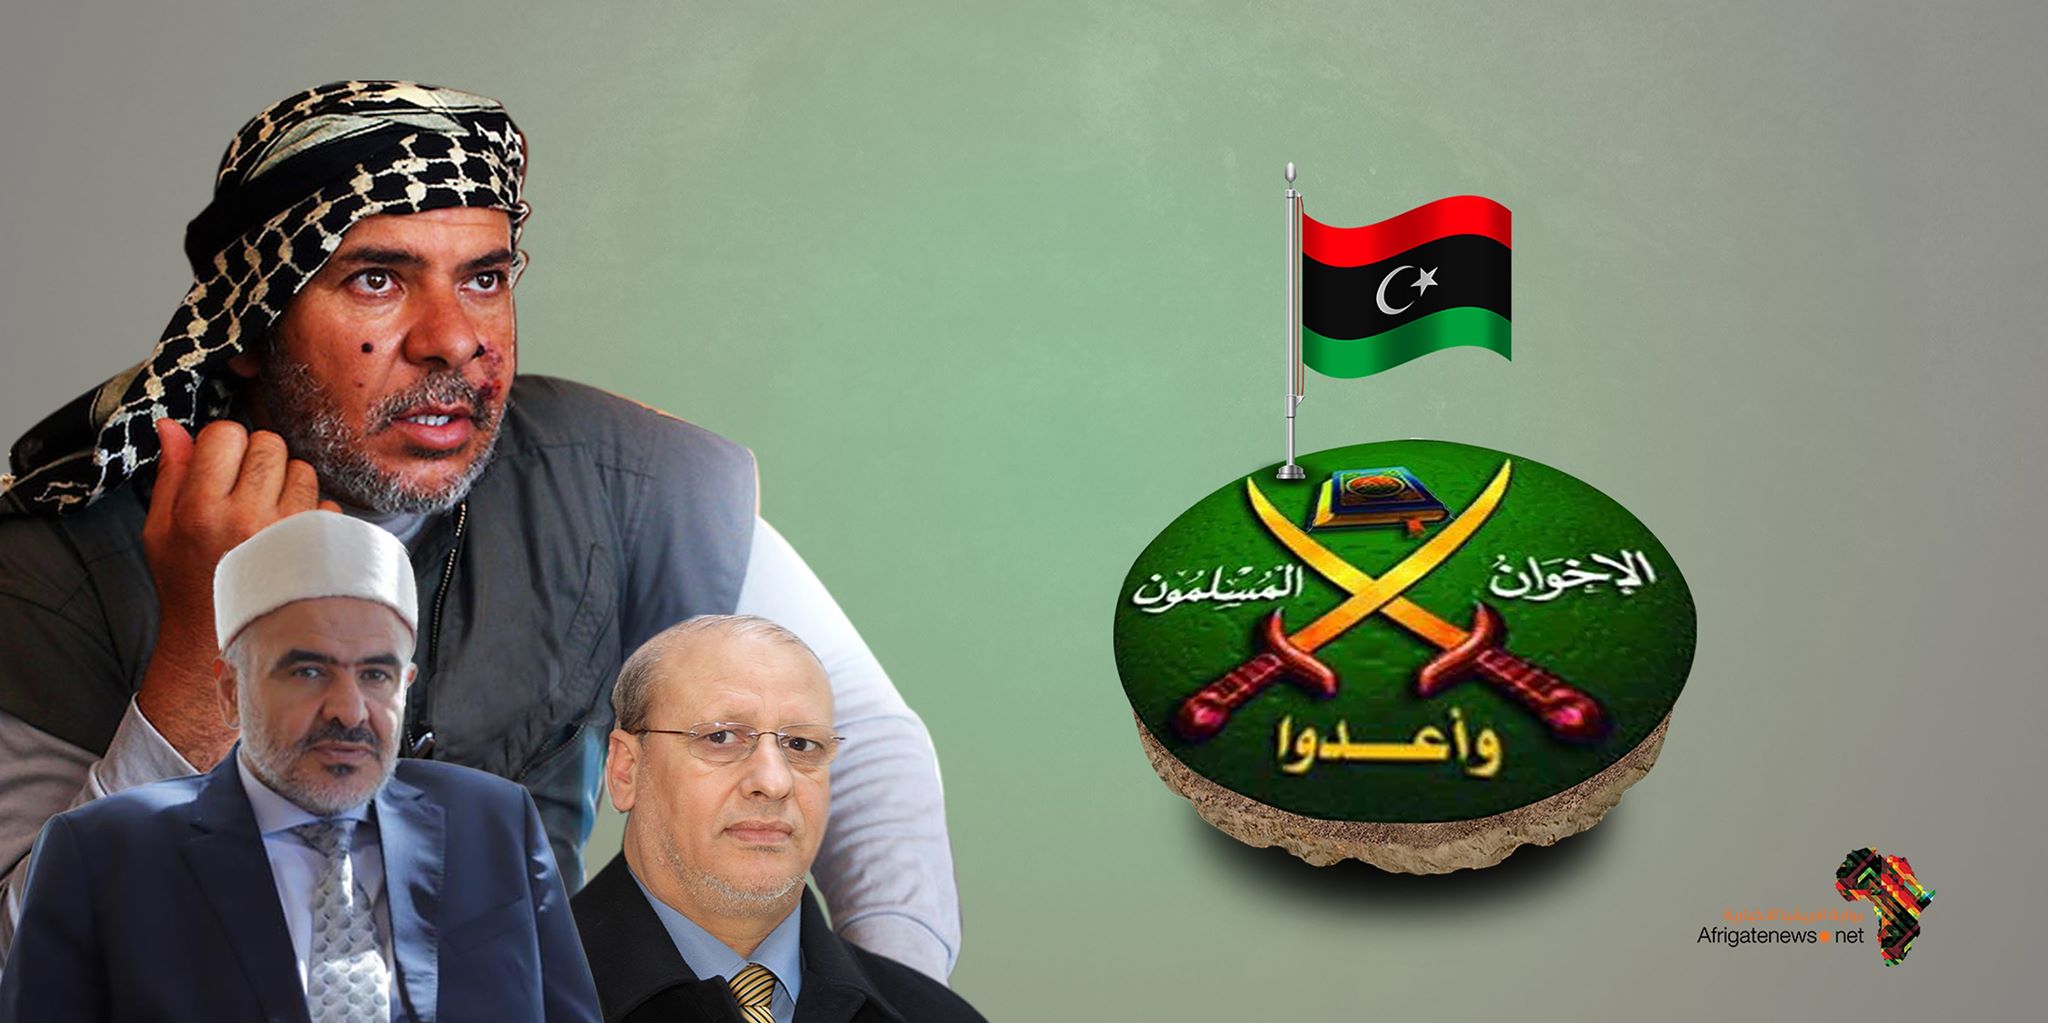 من تاريخ إلى الحاضر إخوان ليبيا في لعبة العنف والخنادق الد ولية بوابة أفريقيا الإخبارية